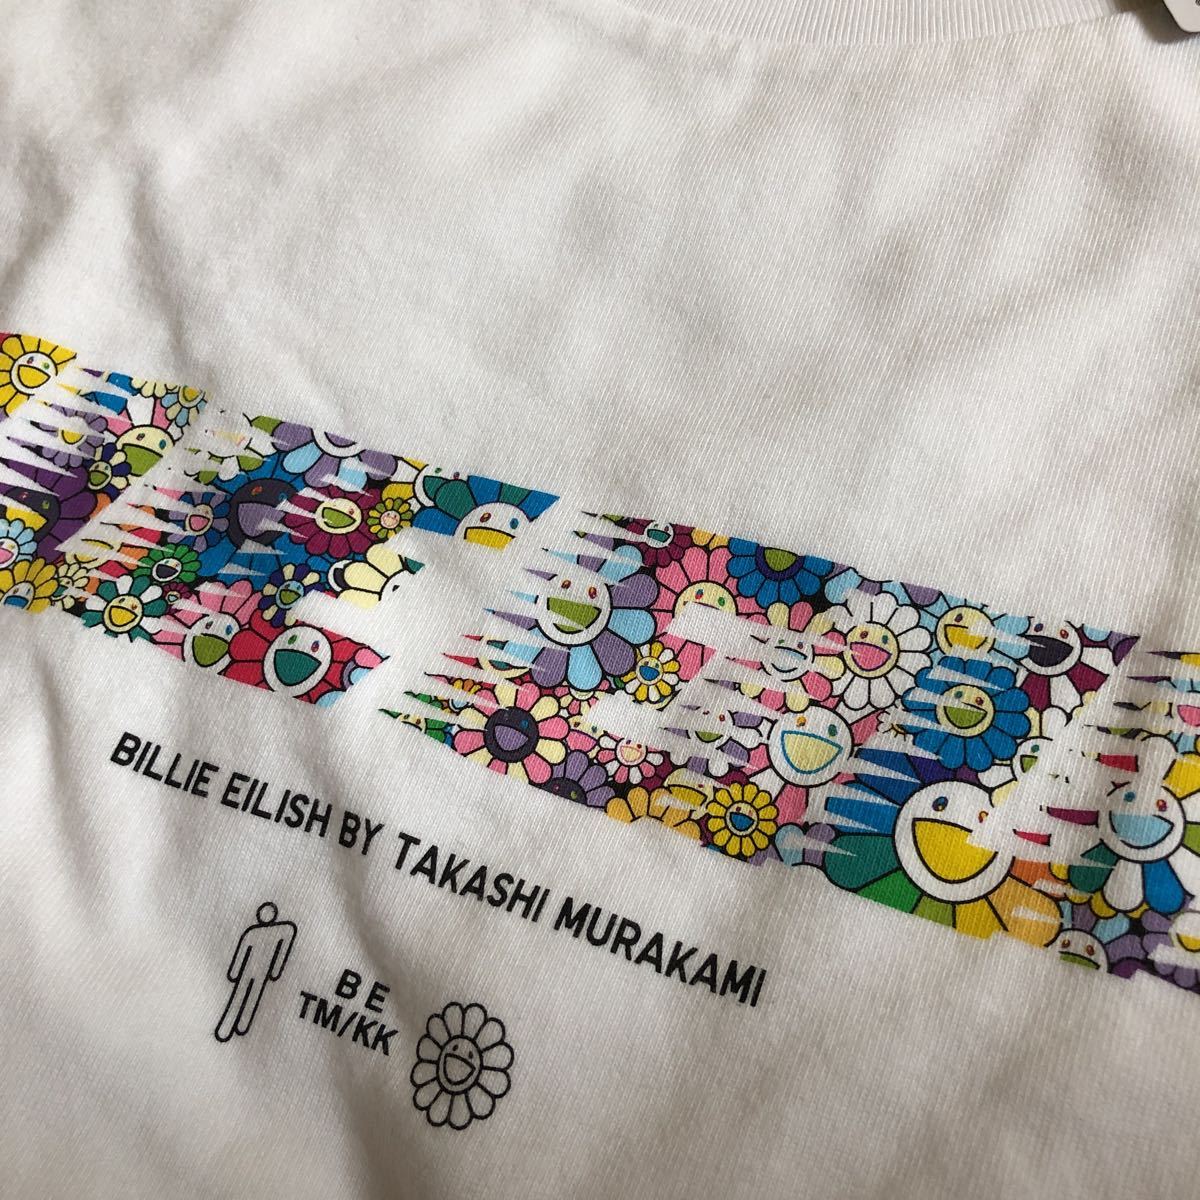 ビリーアイリッシュ × 村上隆 lady's S 新品 オーバーサイズ 半袖Tシャツ UNIQLO 白 BILLIE EILISH × TAKASHI MURAKAMI lady's Tshirts